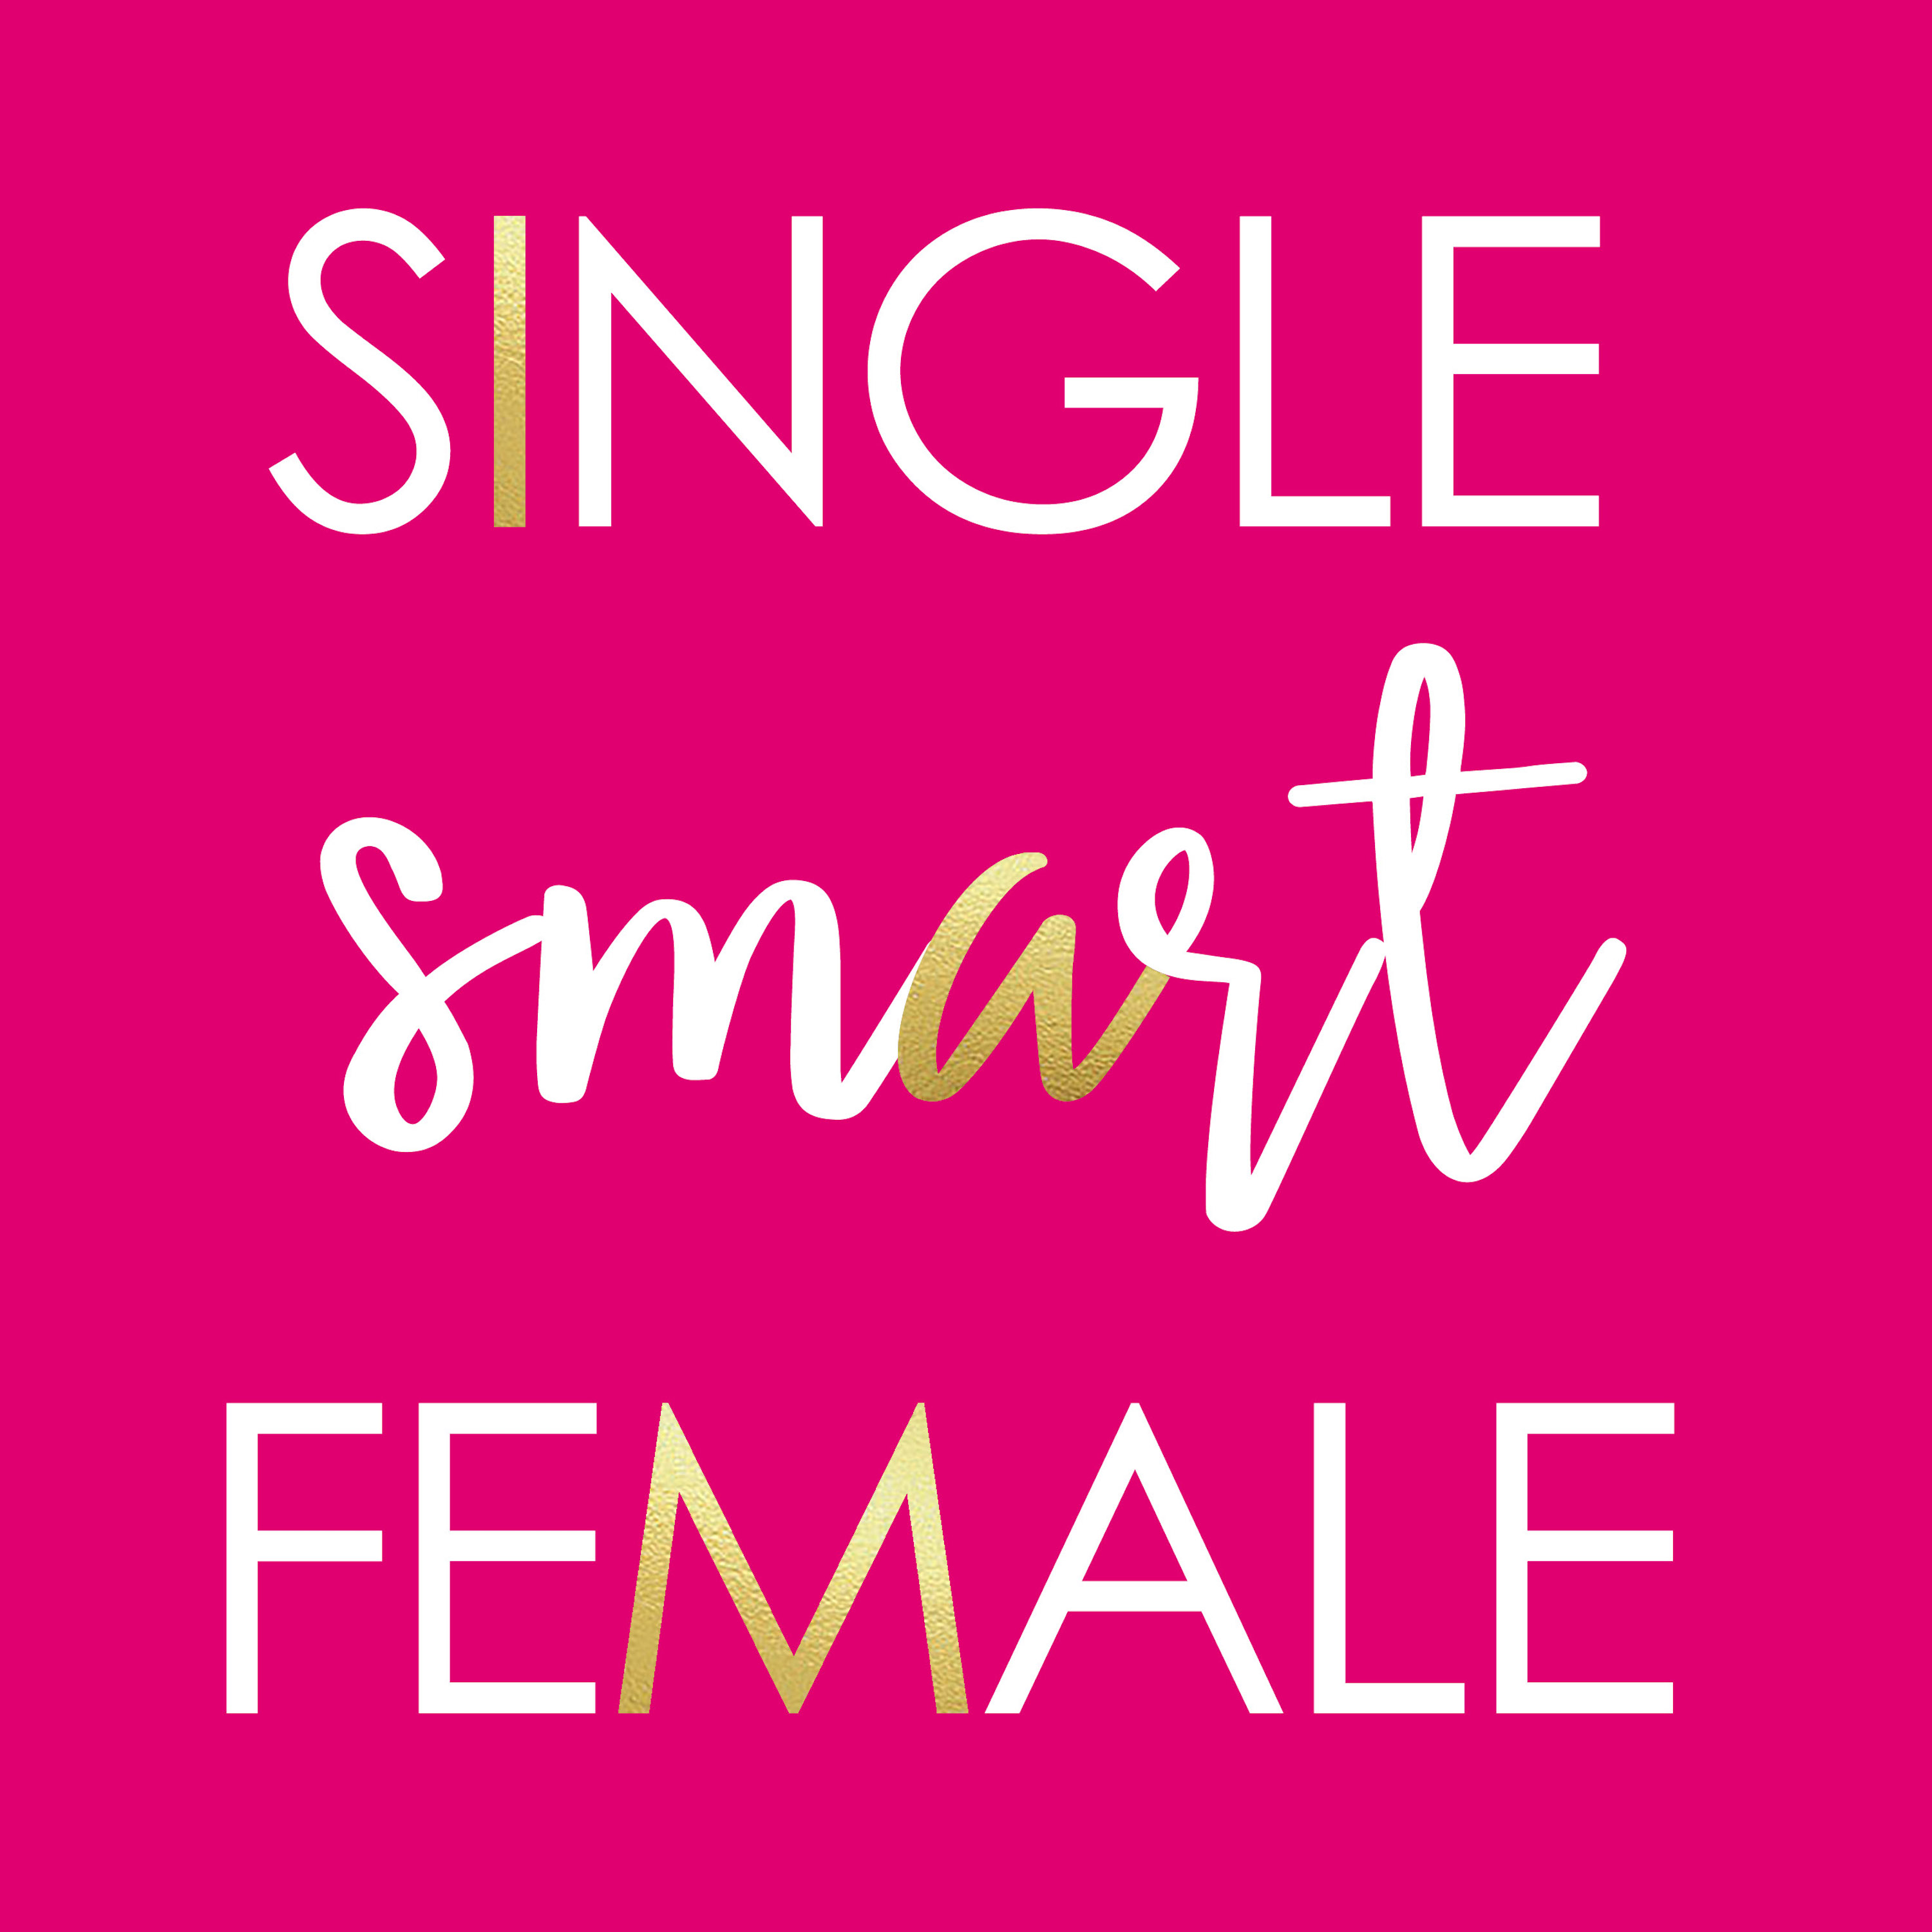 Smart single. Female friendly.